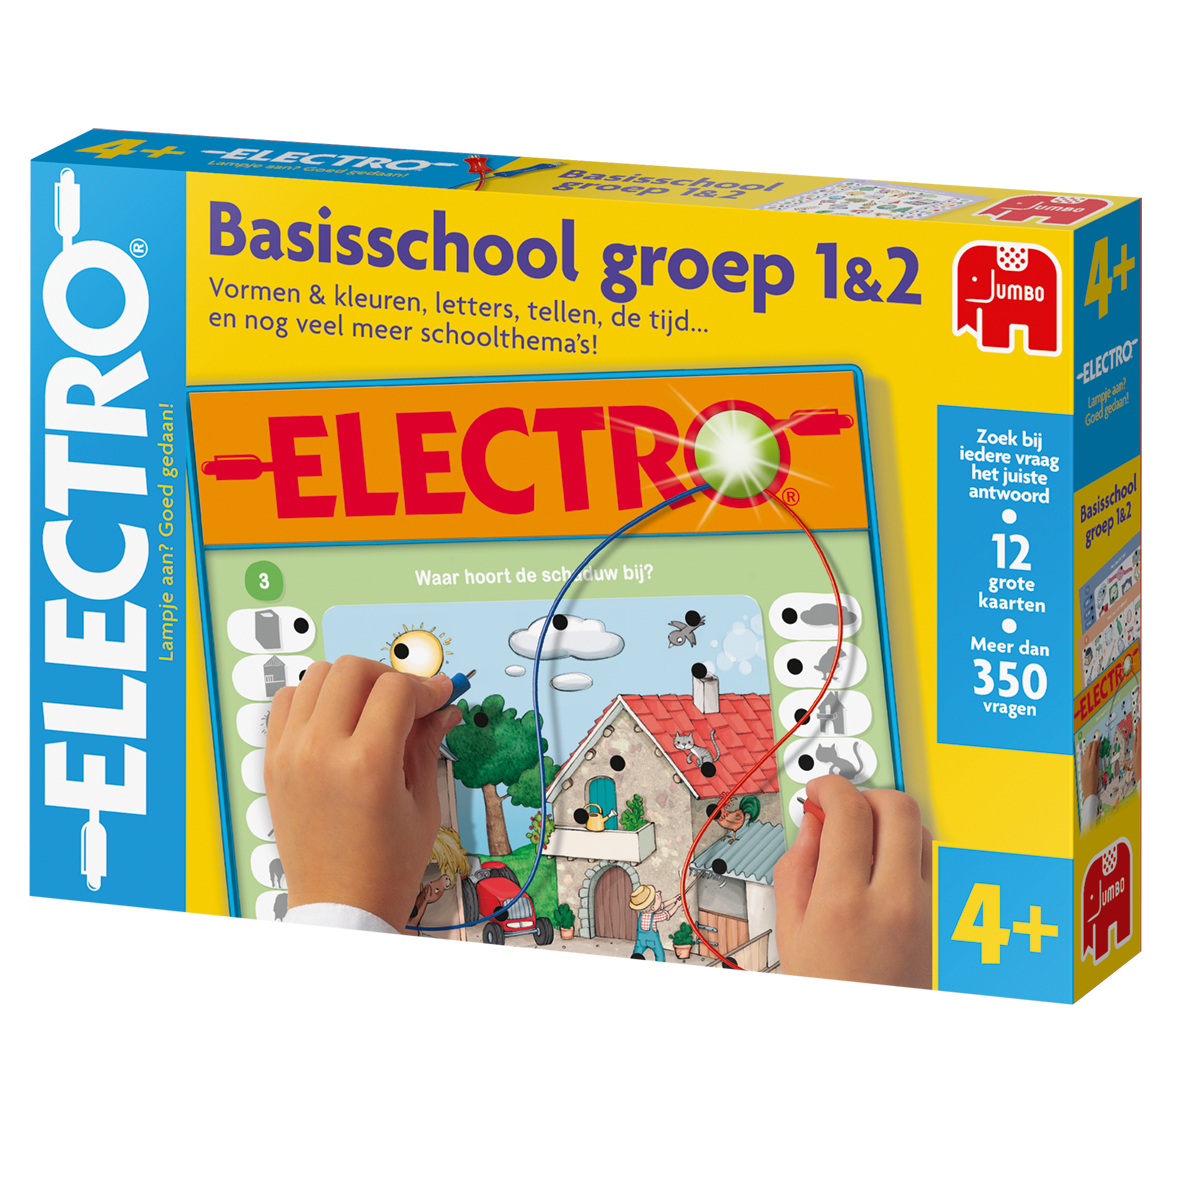 Electro Basisschool groep 1&2 NL - product image - Jumboplay.com